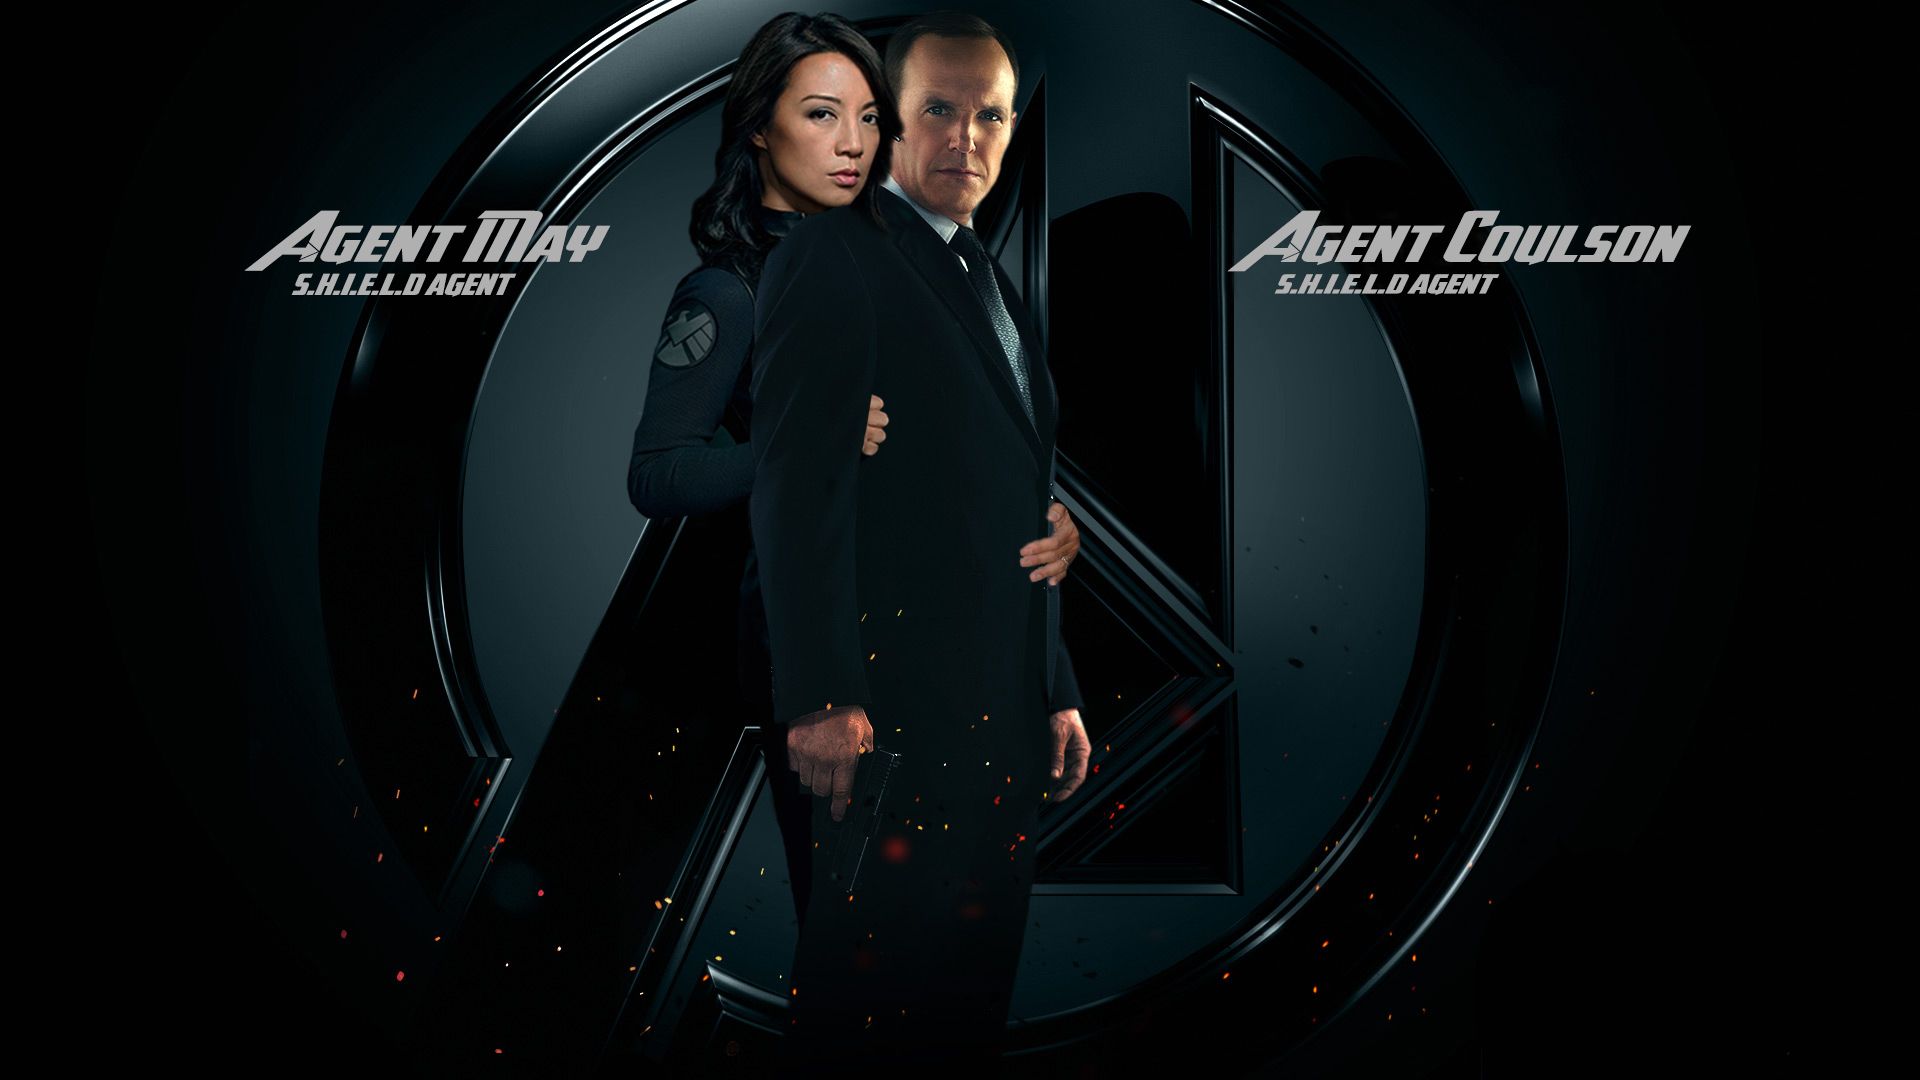 Clark Gregg & Ming Na Wen (Phil Coulson & Melinda May) Of S.H.I.E.L.D. Coulson & Melinda May Wallpaper